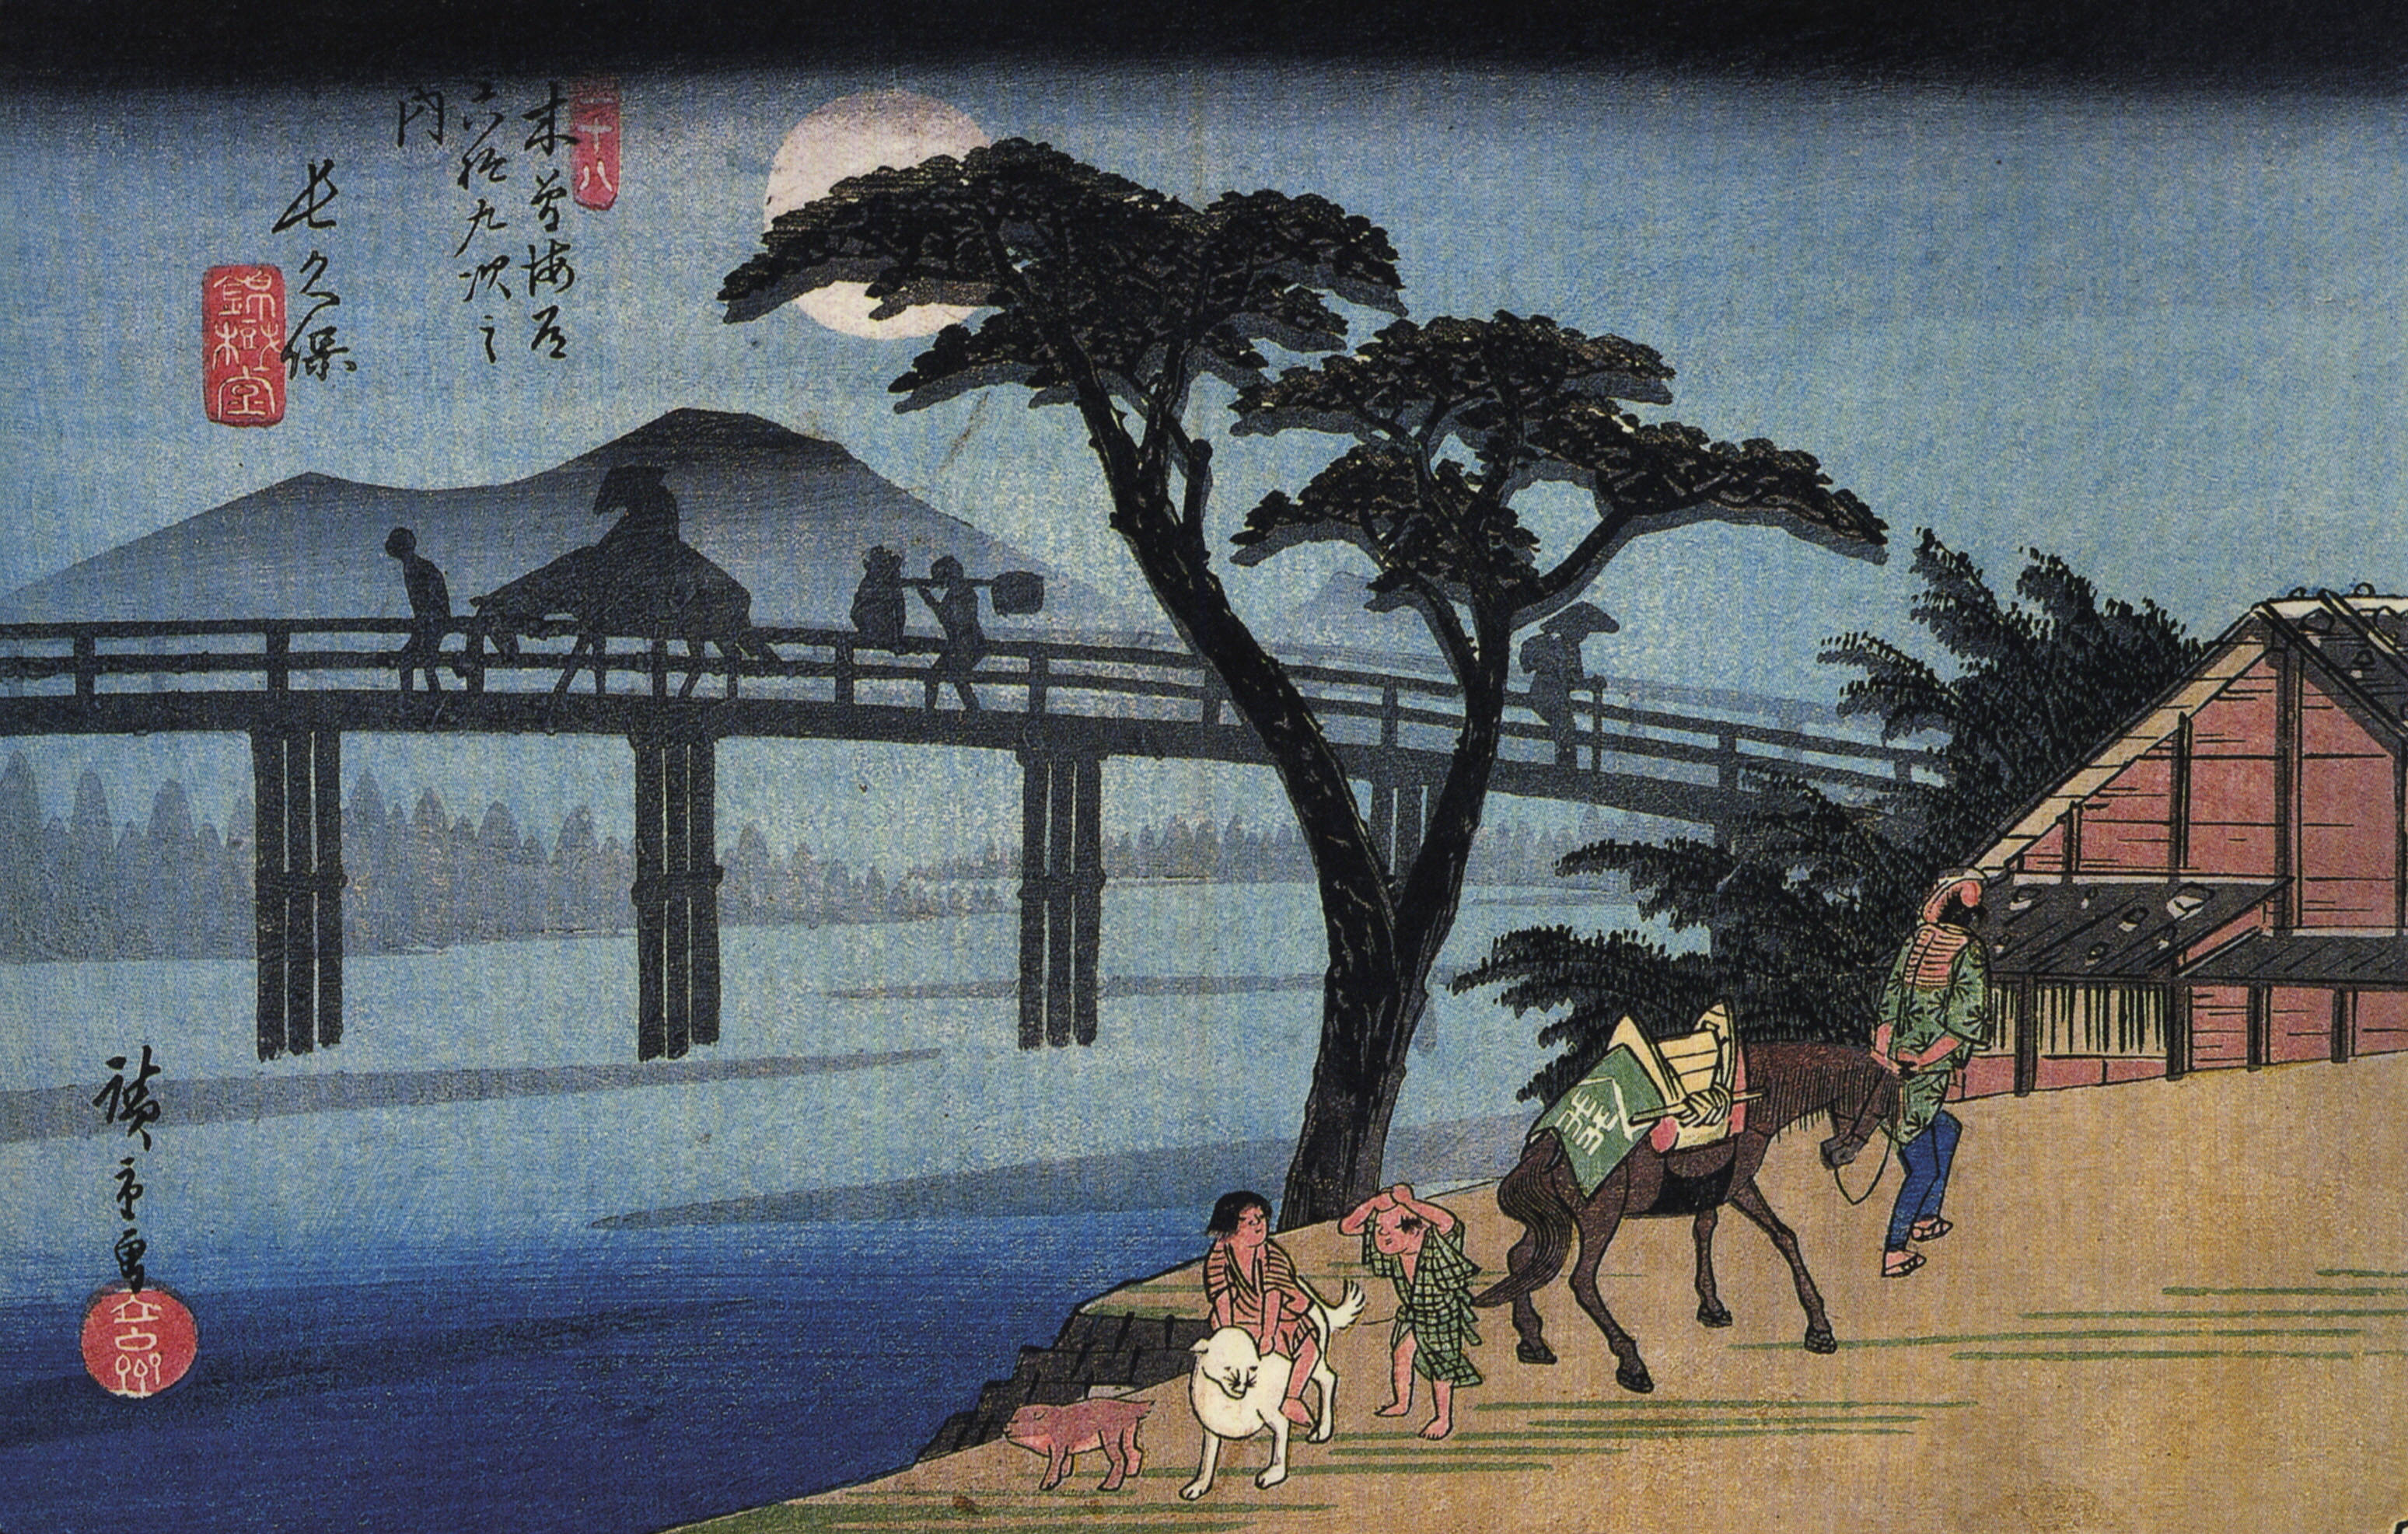 Homem a Cavalo a Atravessar uma Ponte by  Hiroshige - 1834-1842 - 18.3 x 25.6 cm 